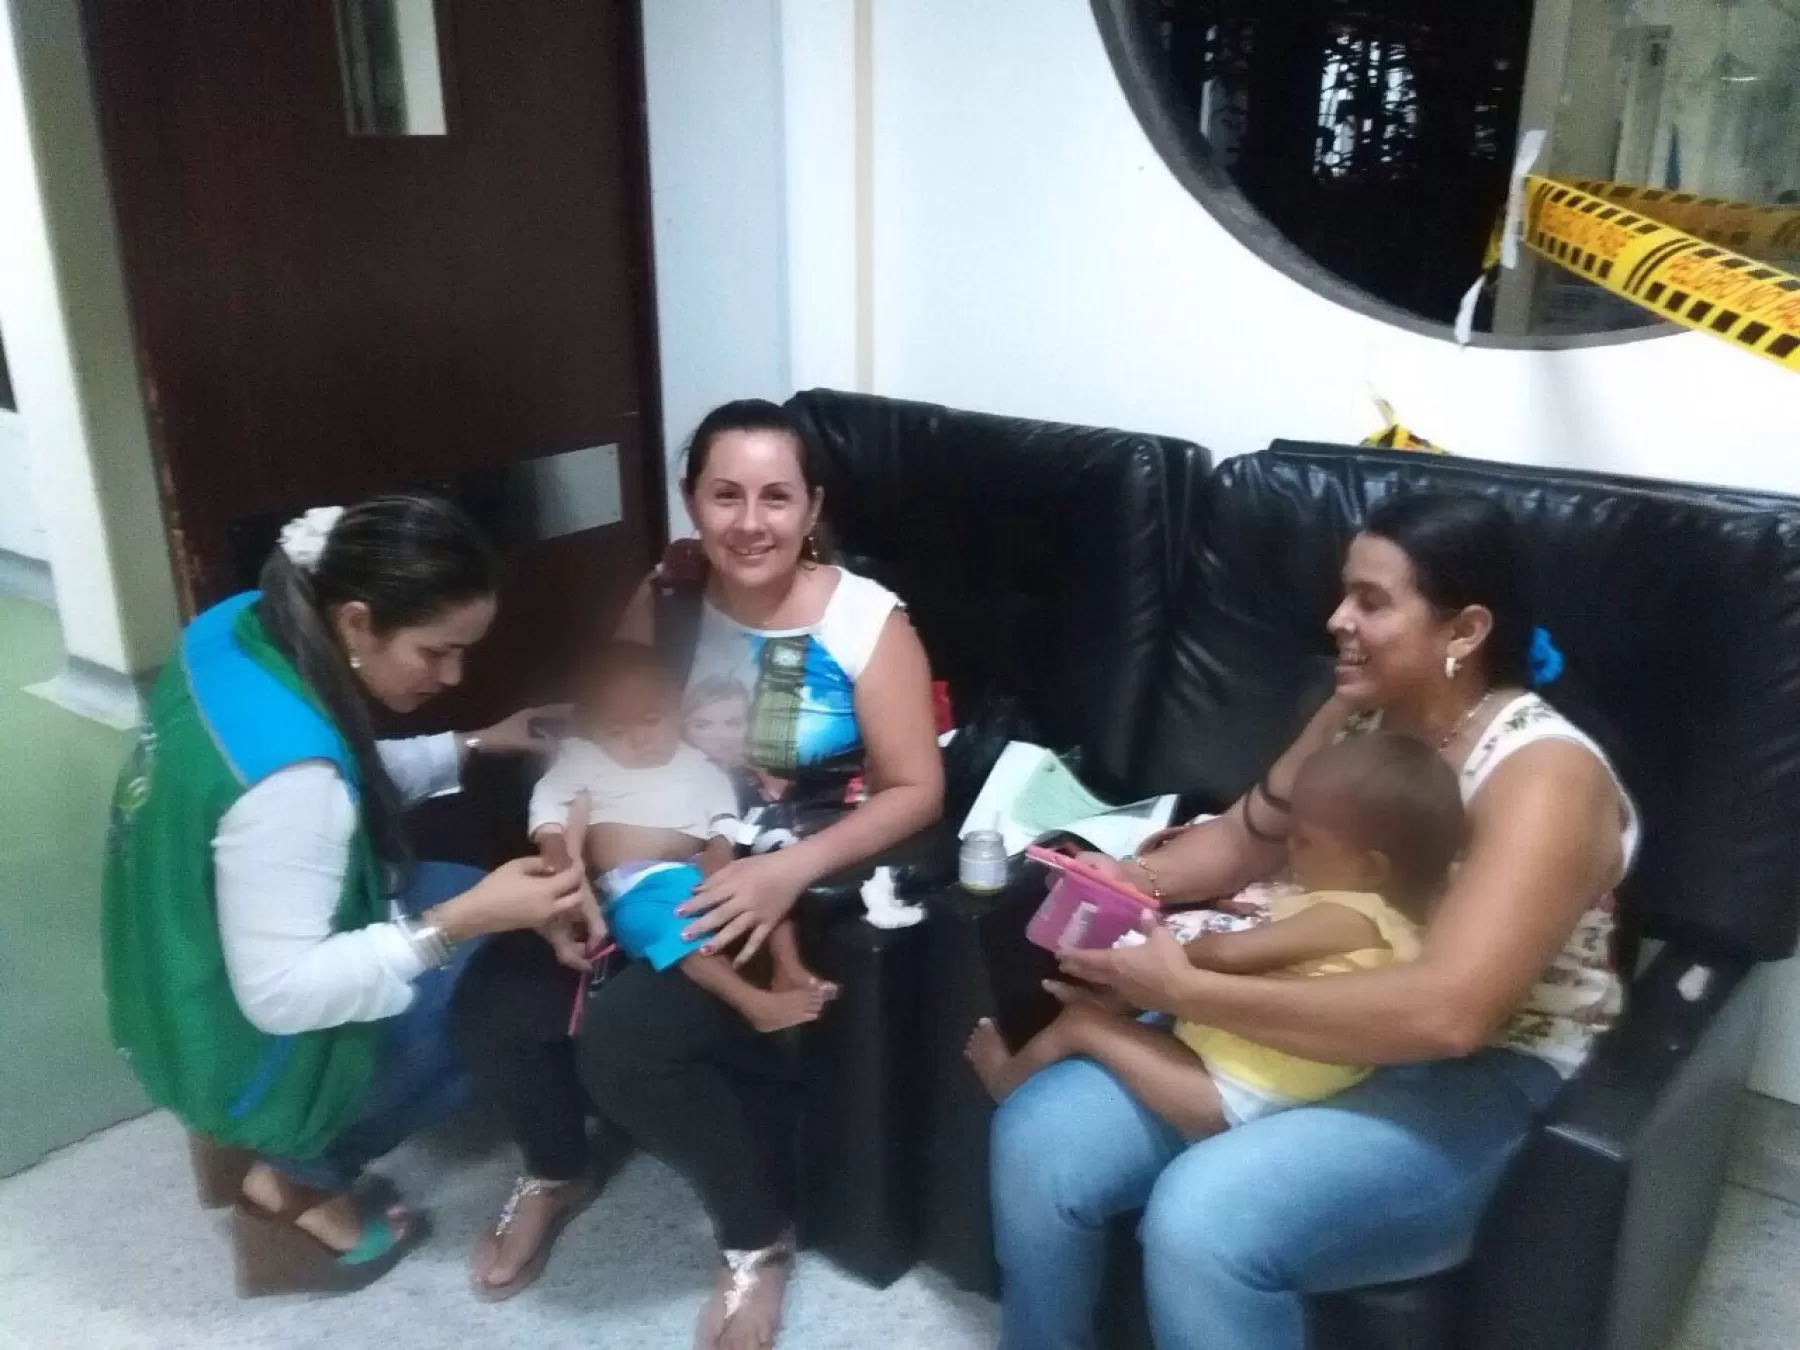 14 niños y niñas indígenas procedentes de Mapiripán quienes presentaban síntomas de desnutrición fueron ubicados en hogares sustitutos de Villavicencio, Meta.